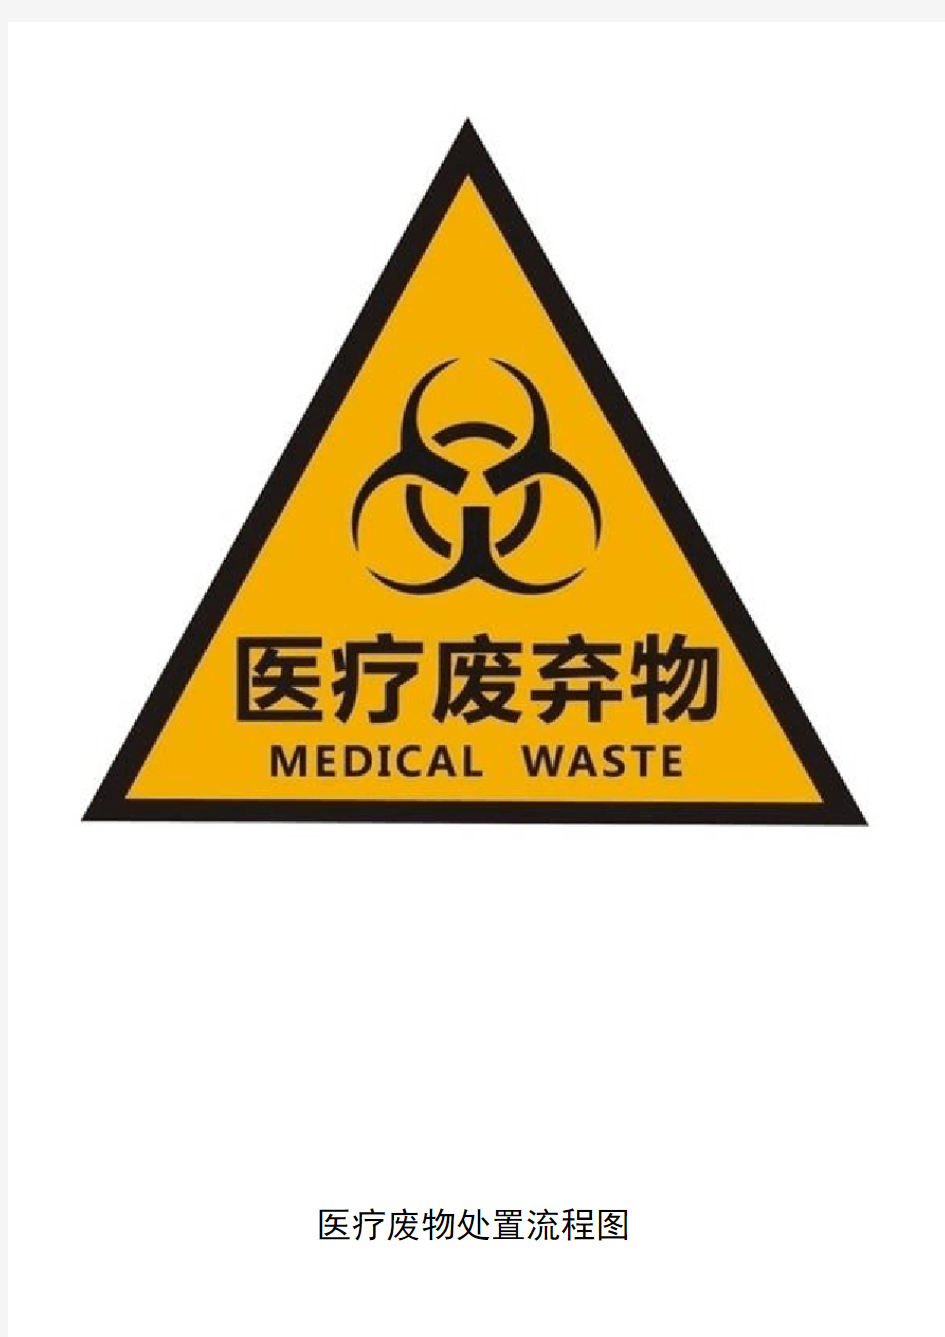 -医疗废物标志和医疗废物处理流程图